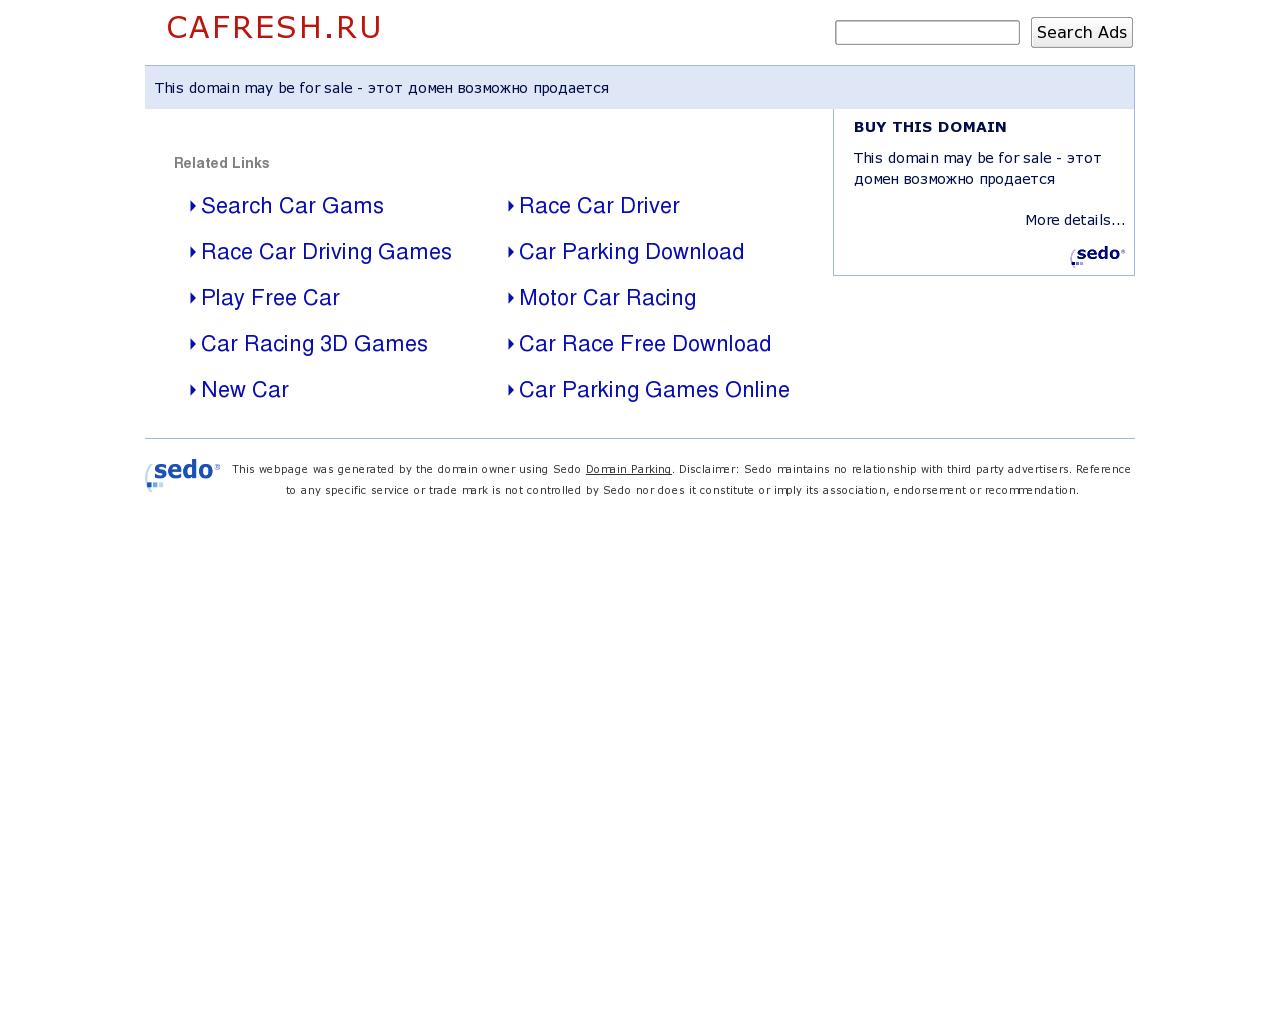 Изображение сайта cafresh.ru в разрешении 1280x1024